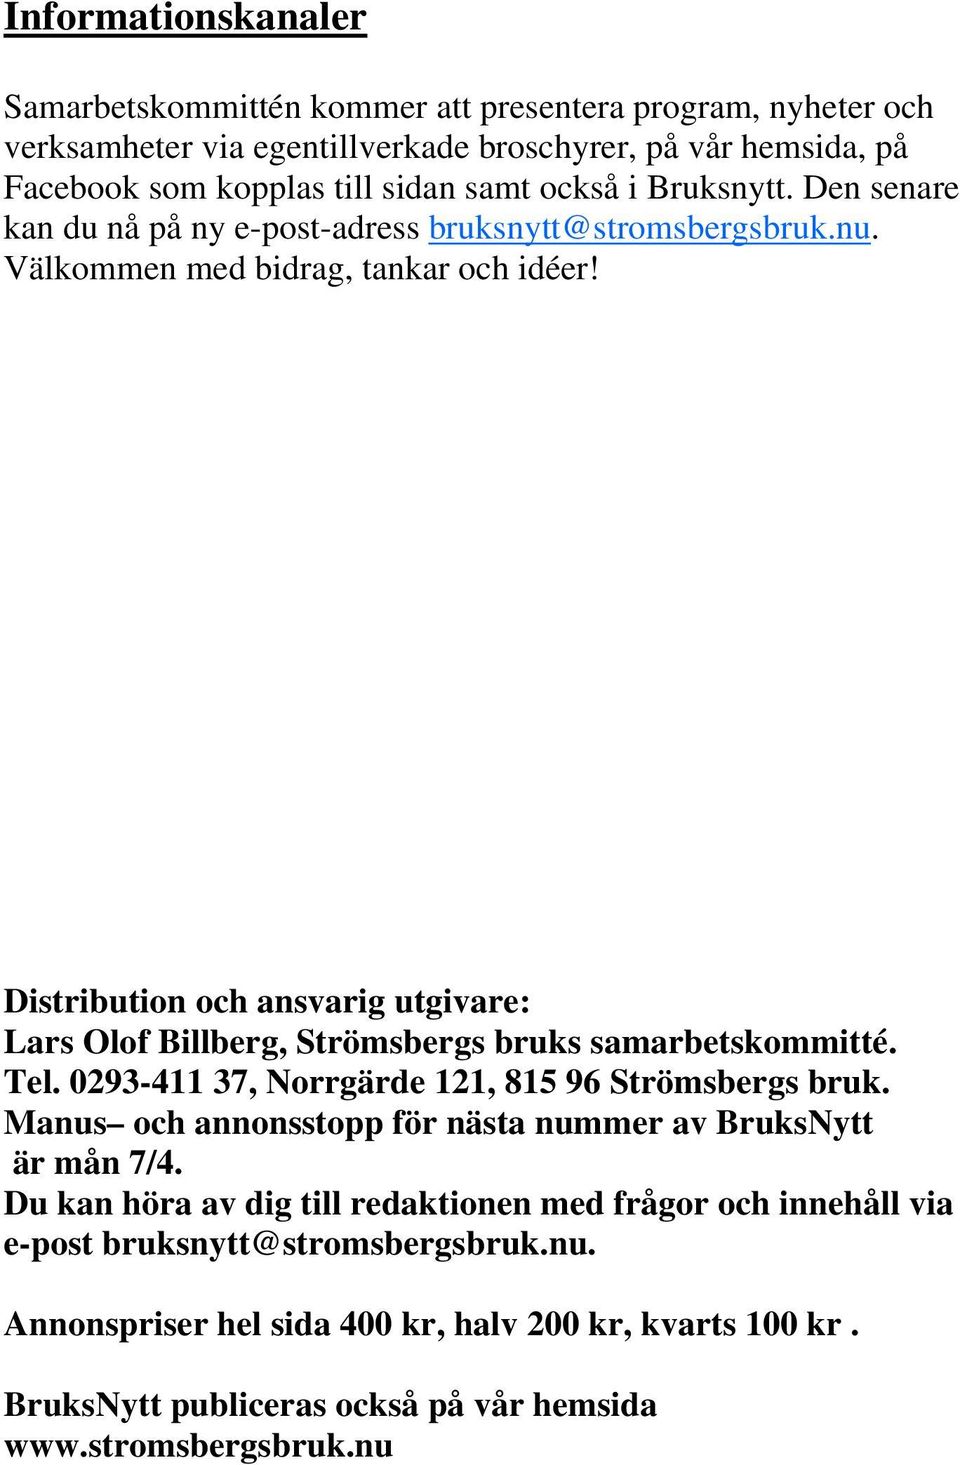 Distribution och ansvarig utgivare: Lars Olof Billberg, Strömsbergs bruks samarbetskommitté. Tel. 0293-411 37, Norrgärde 121, 815 96 Strömsbergs bruk.